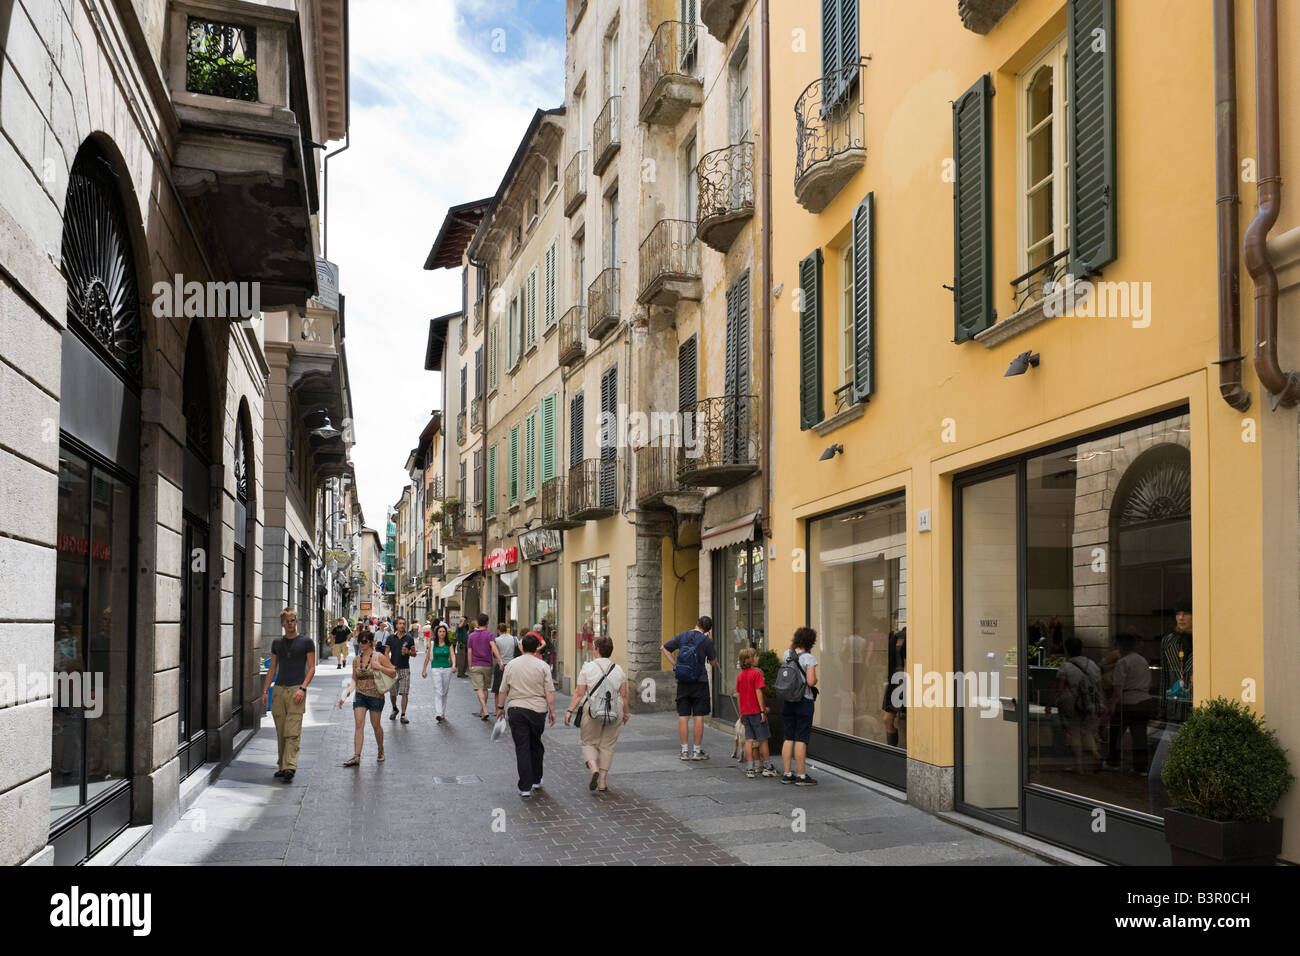 Rue typique dans le centre de la vieille ville, Côme, Lac de Côme, Lombardie, Italie Banque D'Images